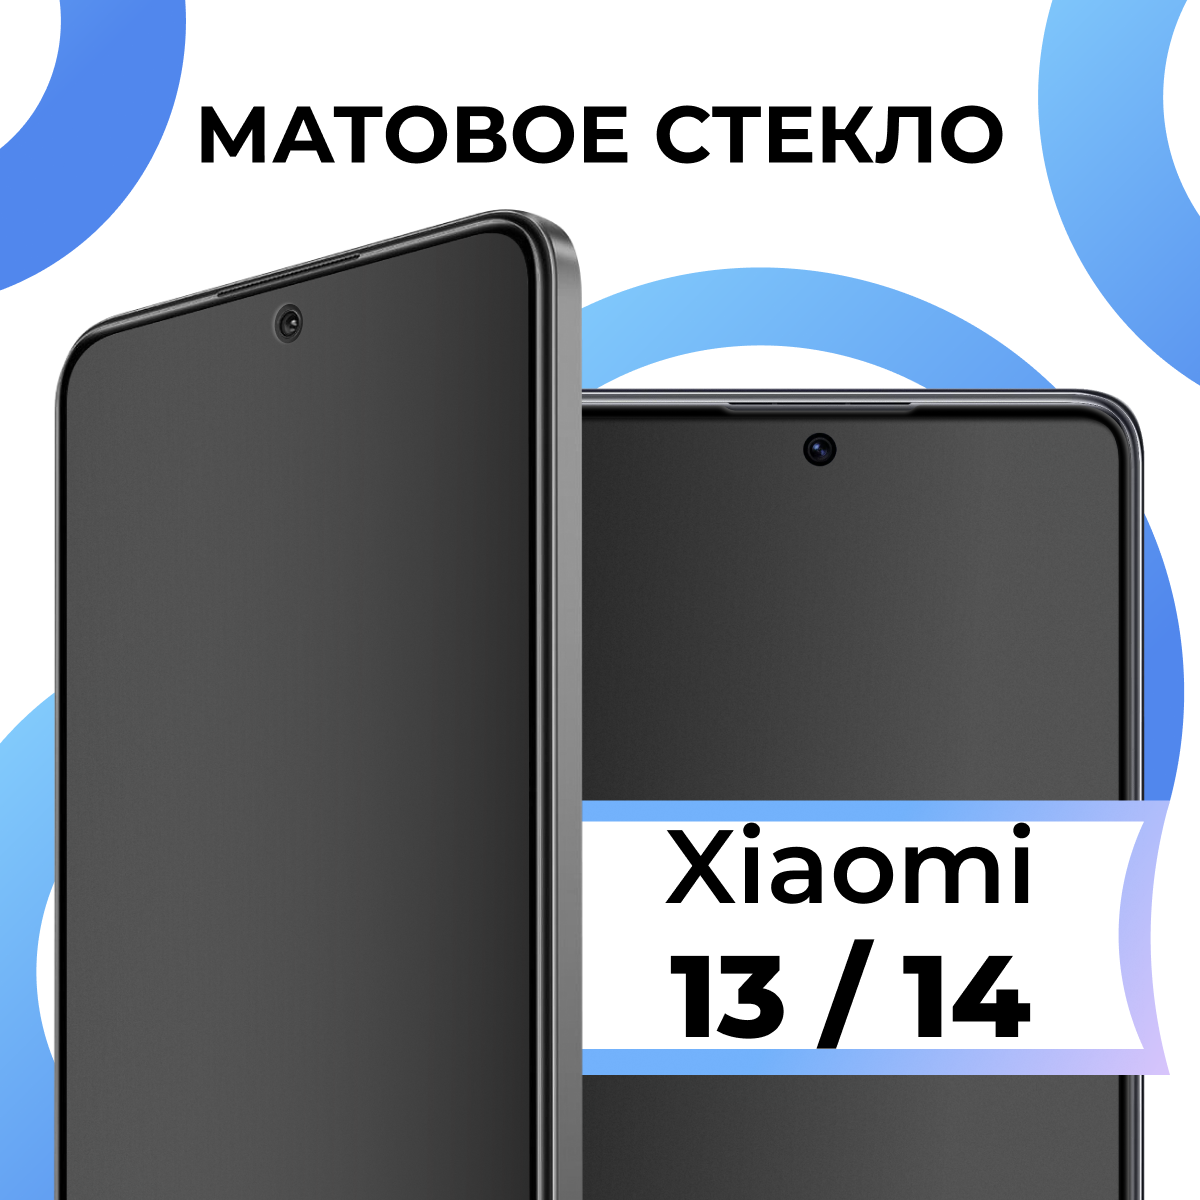 Матовое защитное стекло с полным покрытием экрана для смартфона Xiaomi 13 и 14 / Противоударное закаленное стекло на телефон Сяоми 13 и 14